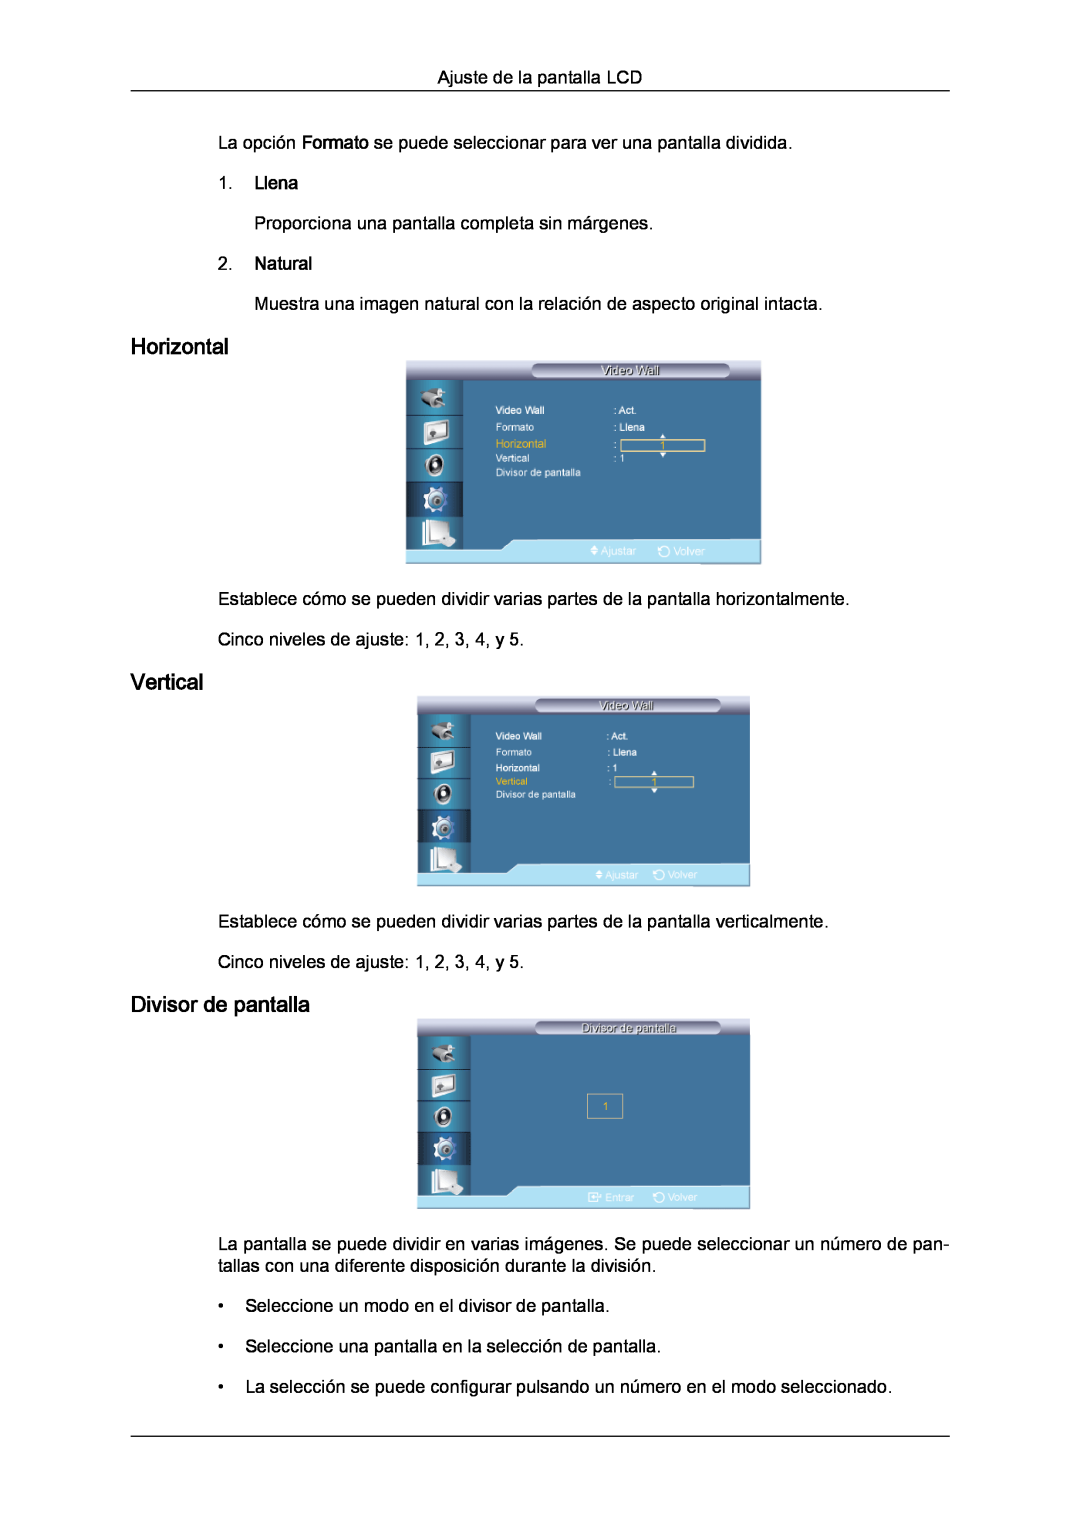 Samsung LH82TCUMBG/EN, LH70TCUMBG/EN manual Horizontal, Vertical, Divisor de pantalla, Llena, Natural 